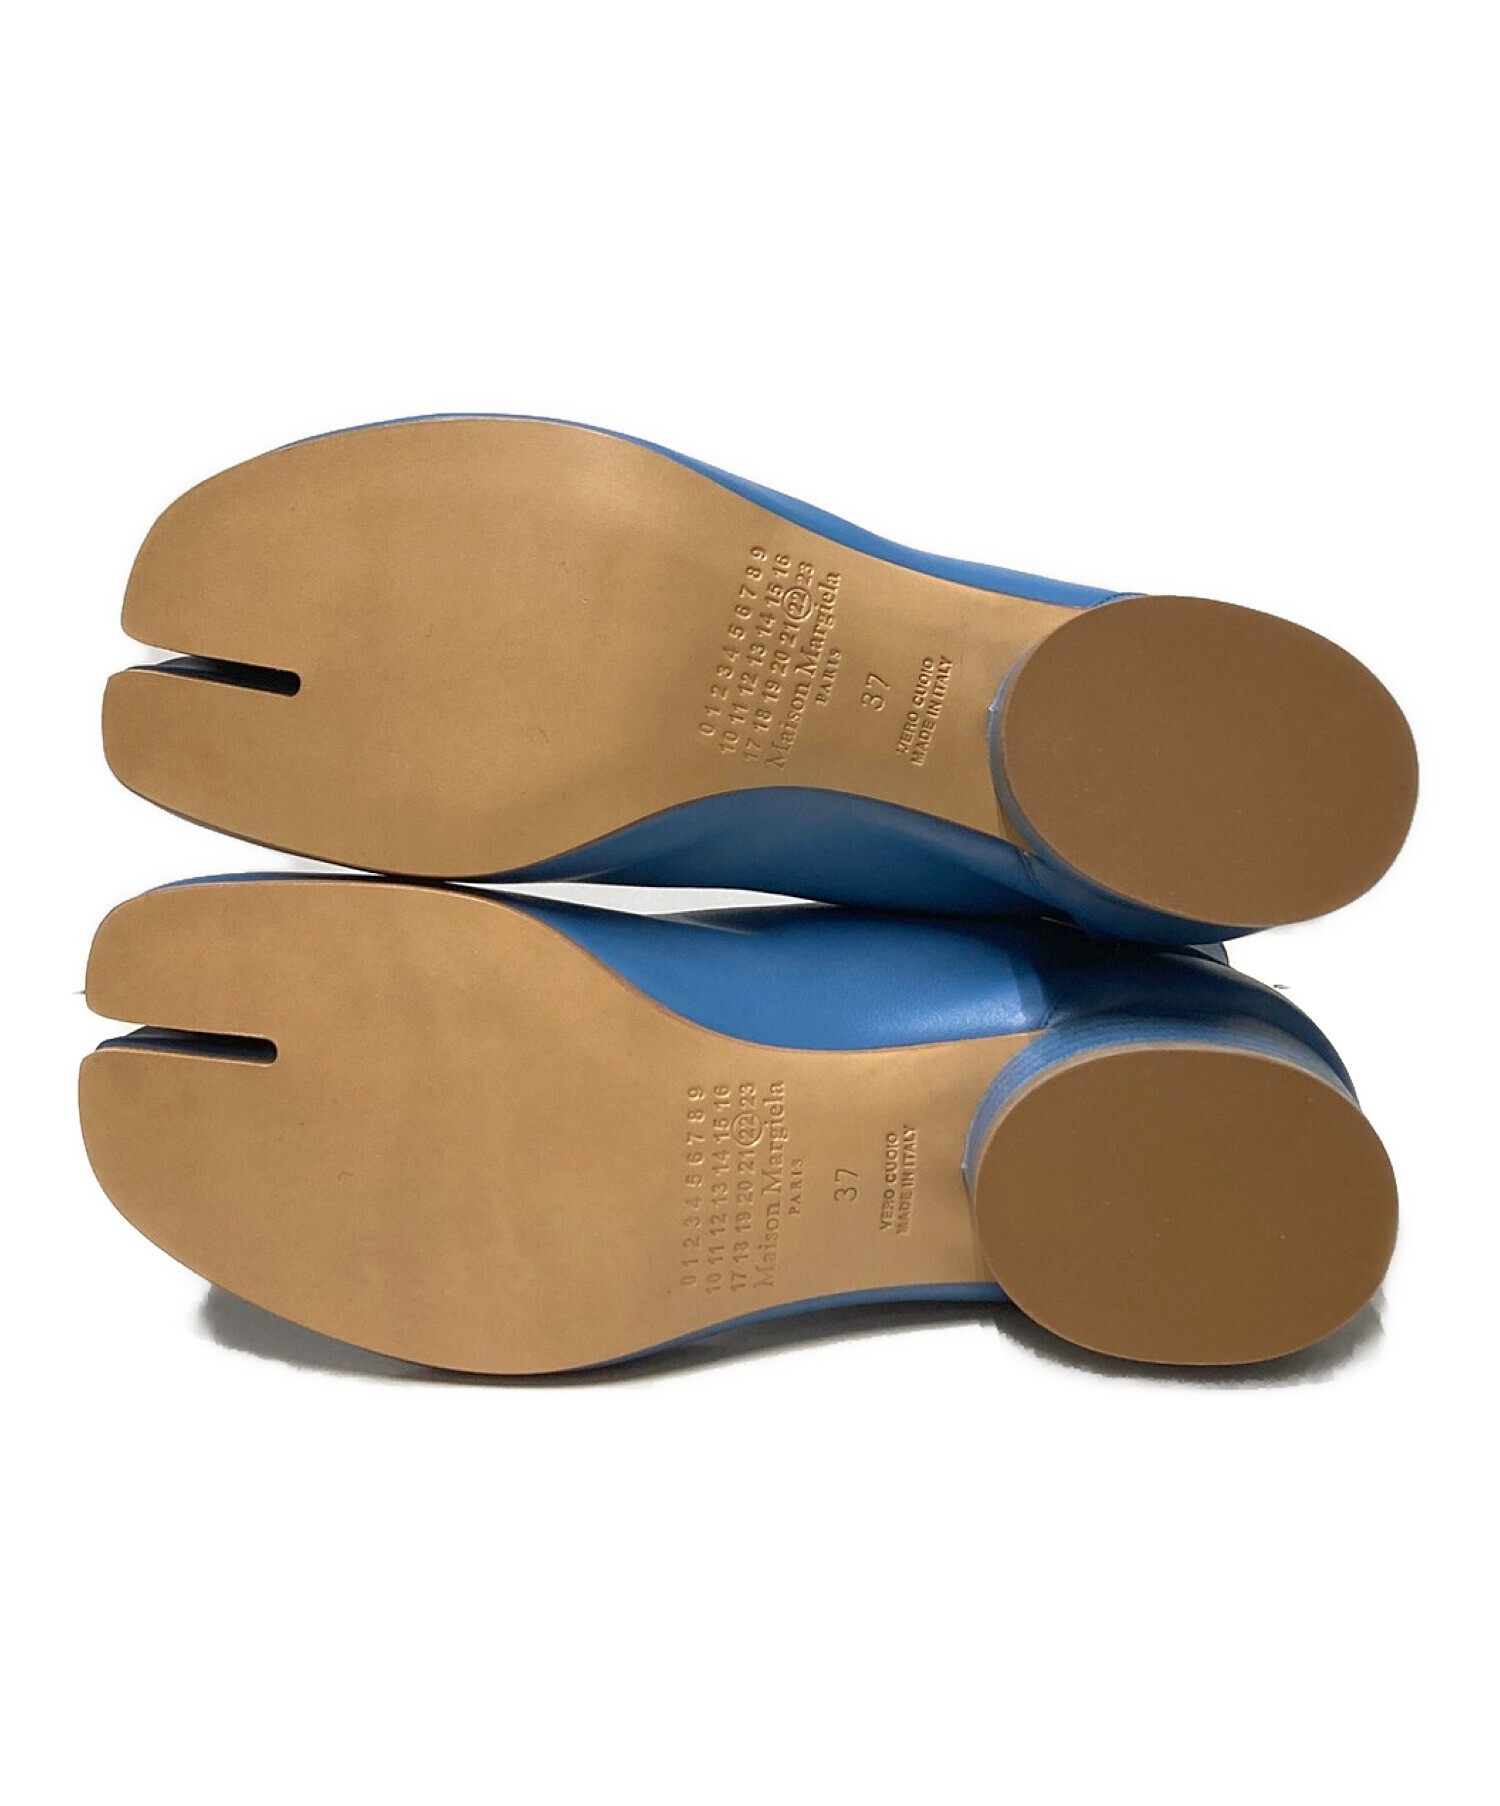 Maison Margiela (メゾンマルジェラ) 足袋ブーツ ブルー サイズ:37